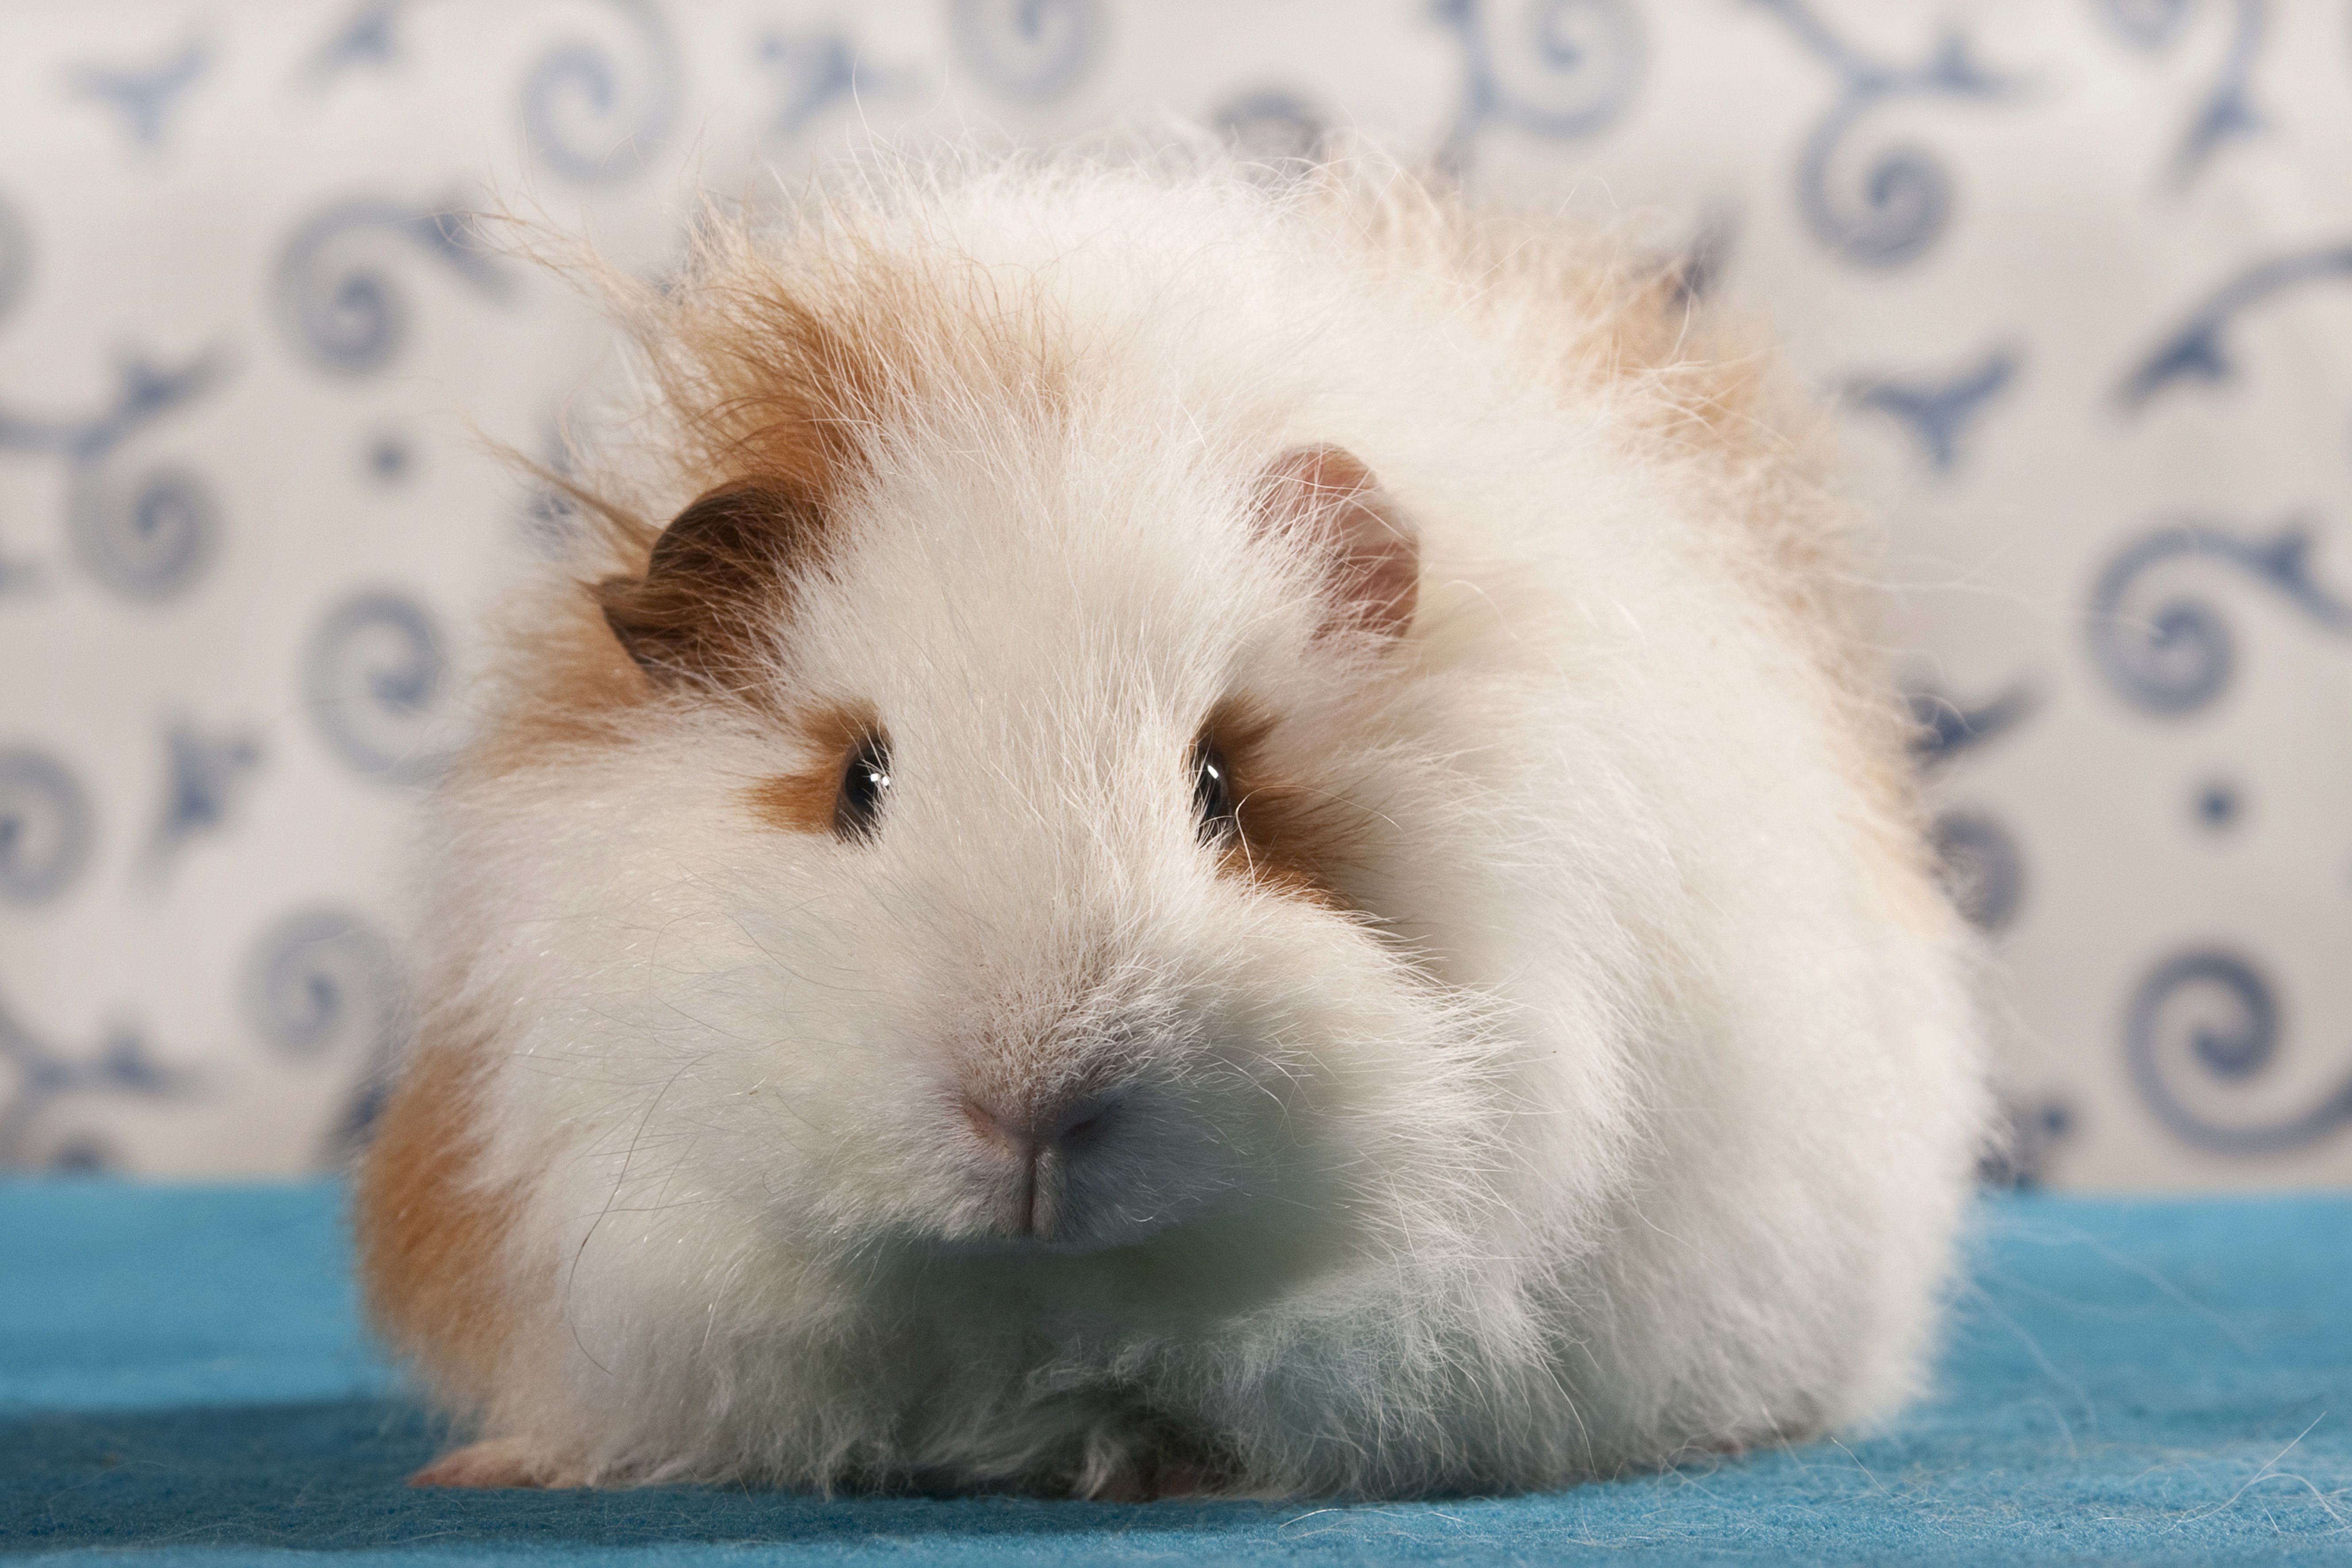 teddy bear guinea pig for sale